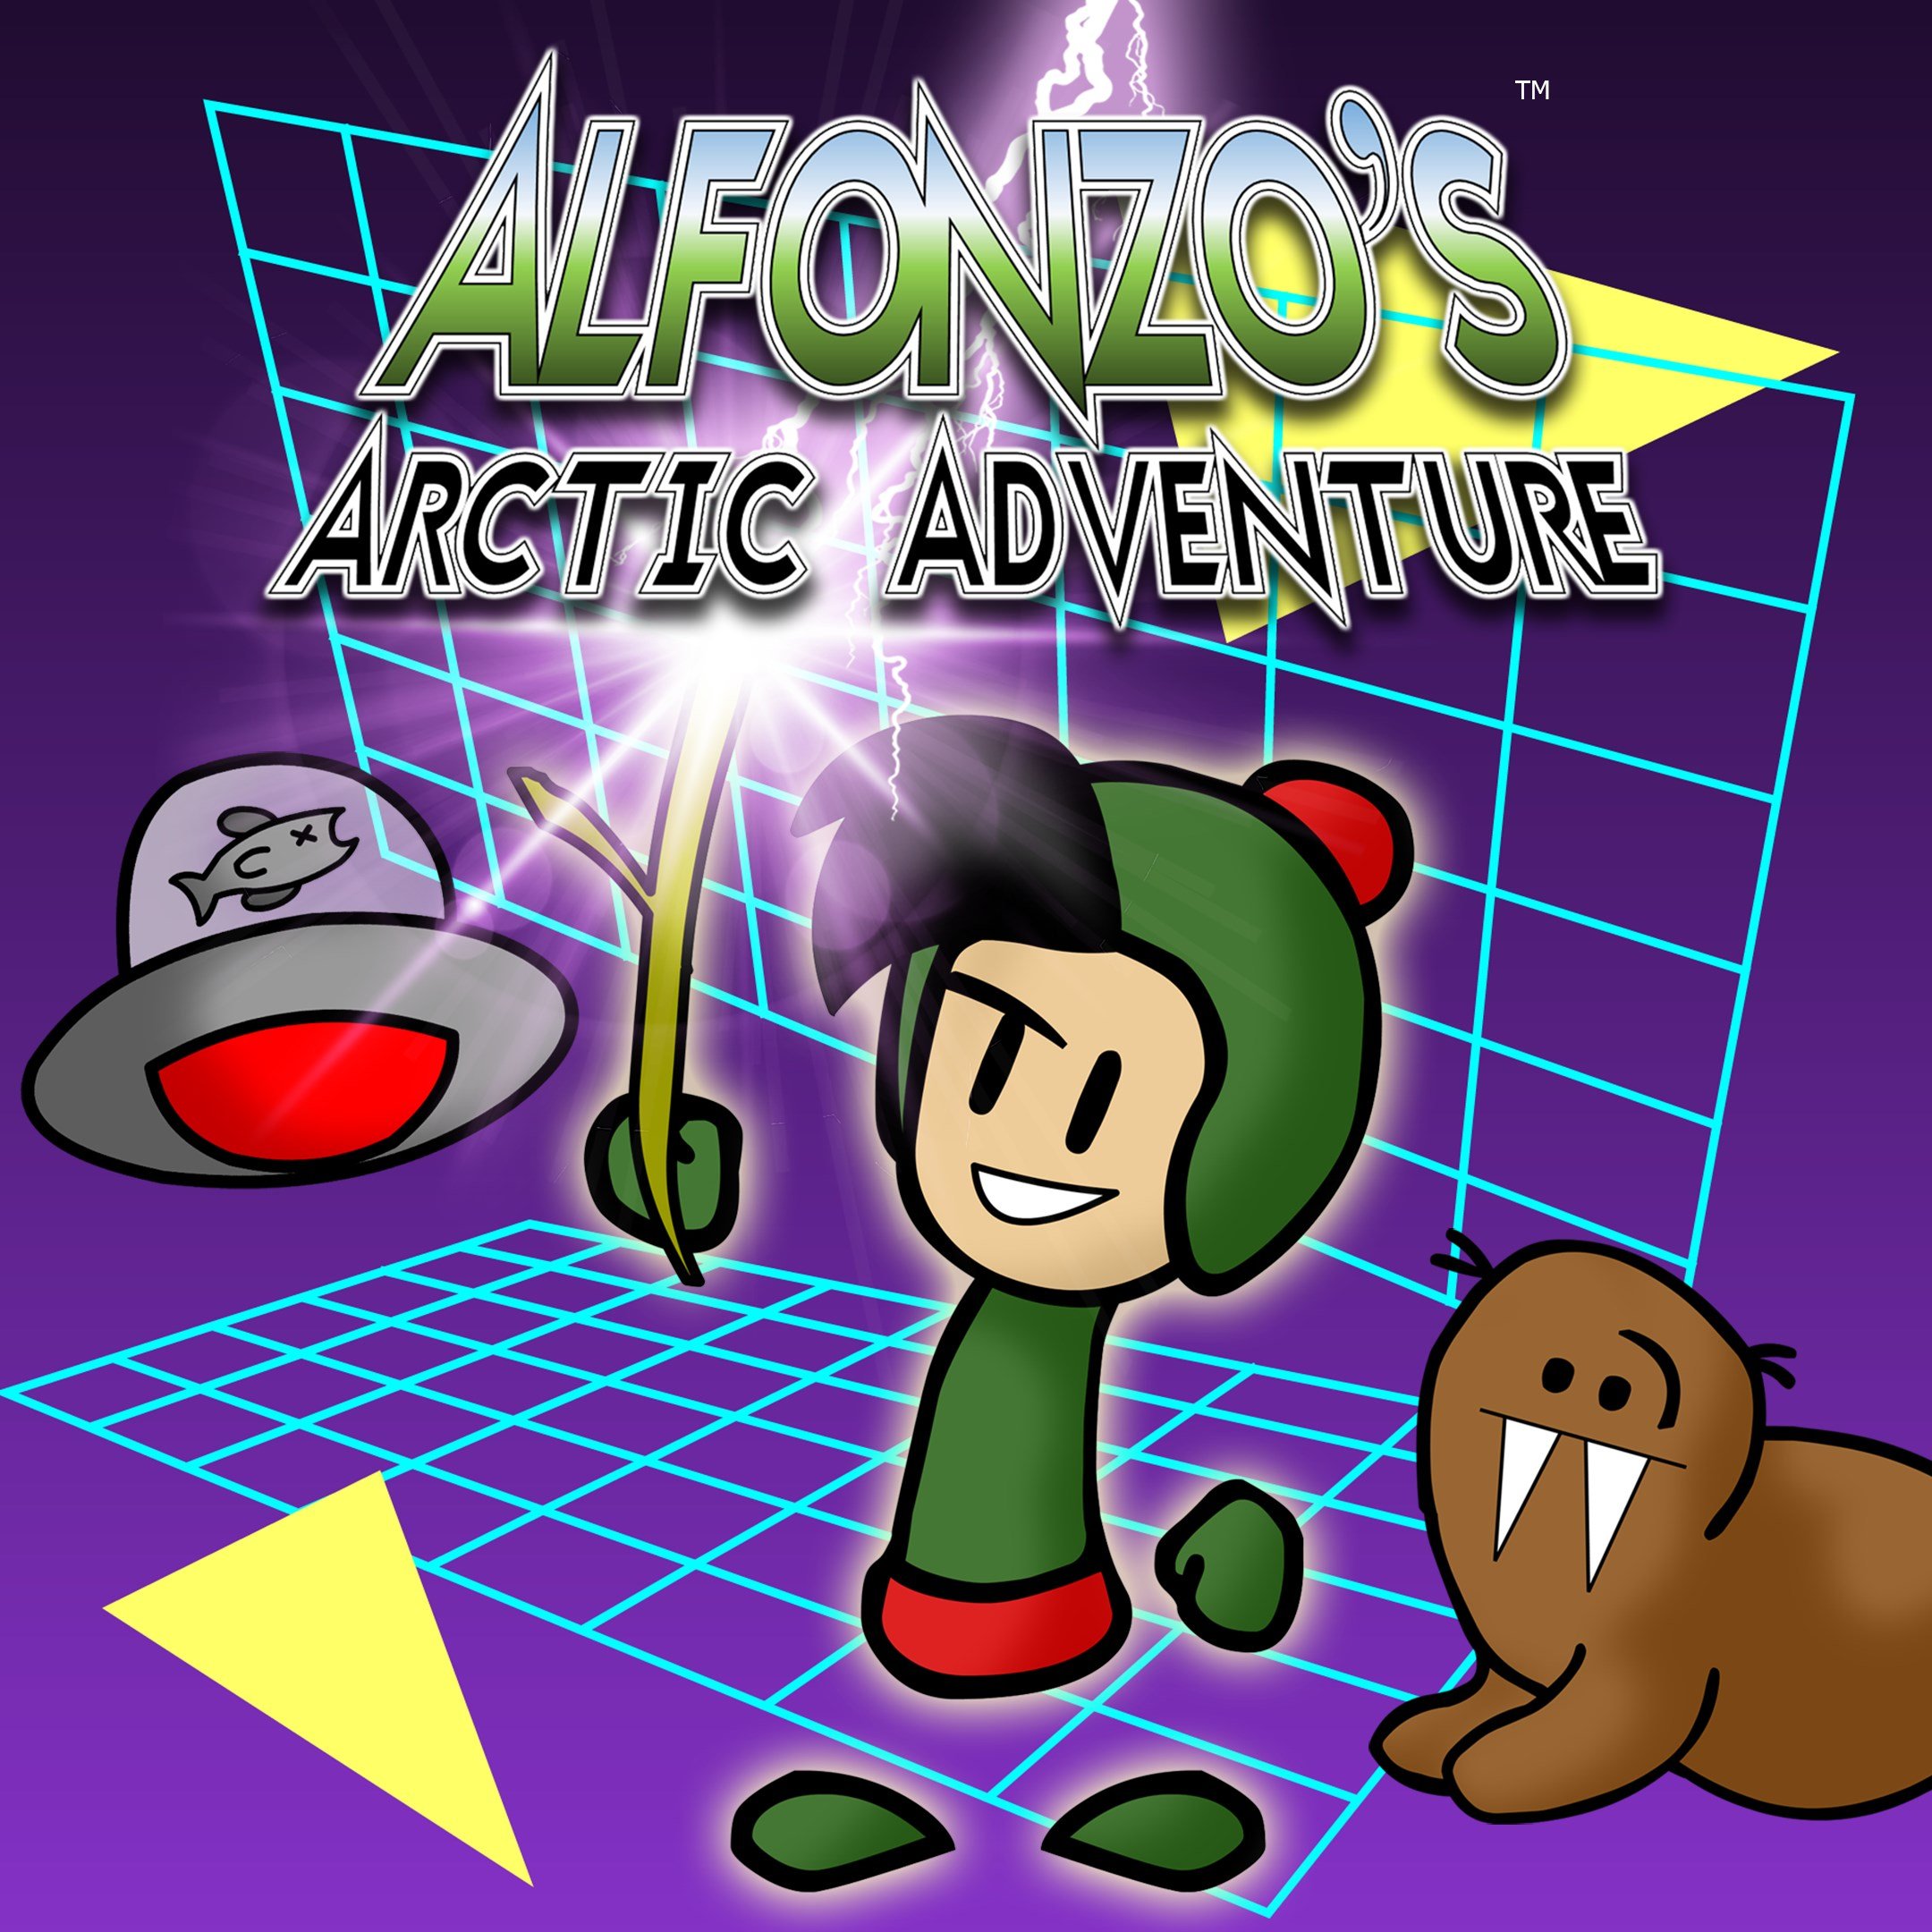 Alfonzo's Arctic Adventure